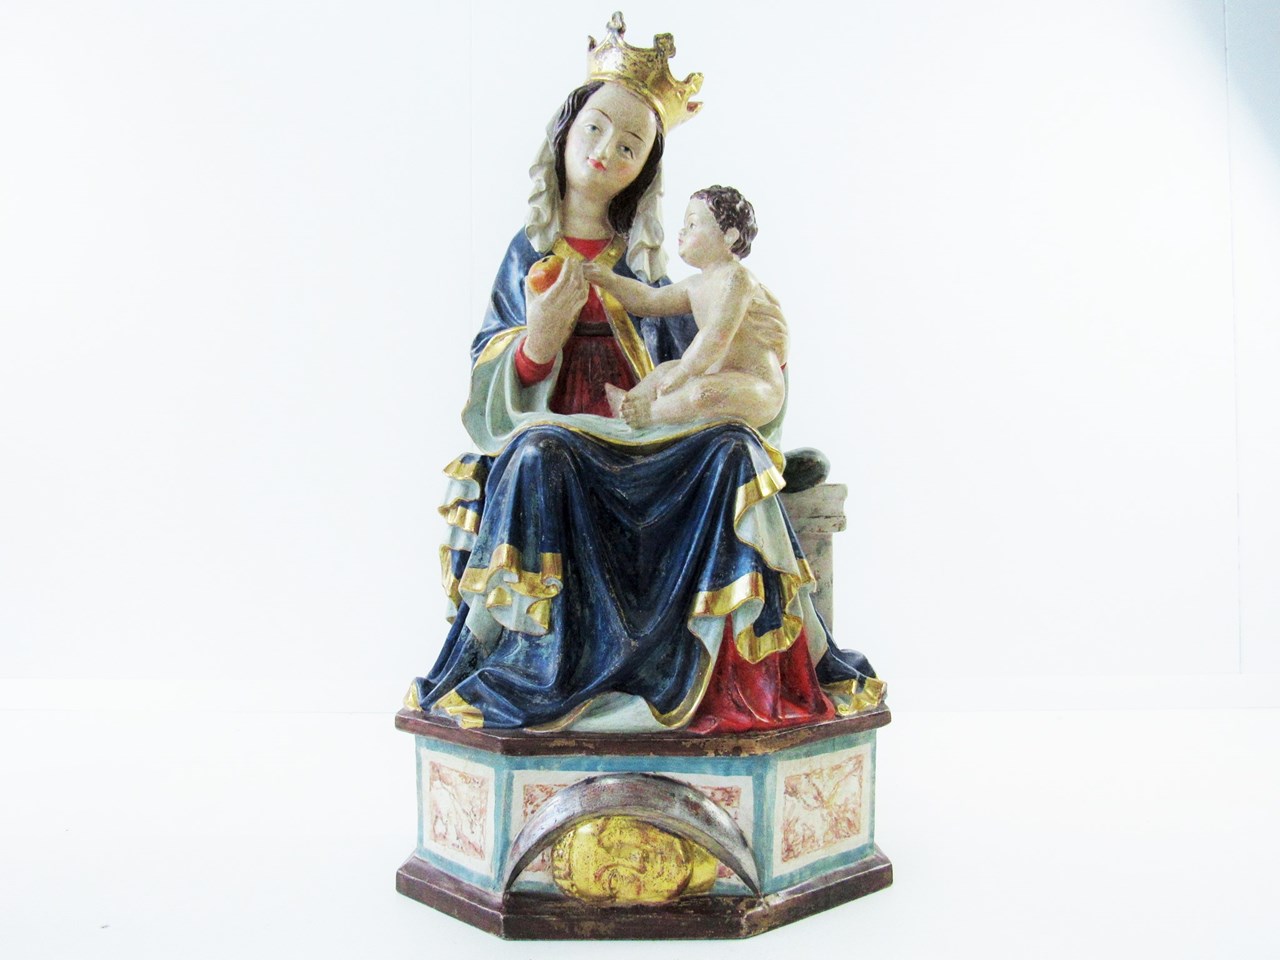 Bild av Heiligenfigur sitzende Madonna von Seeon, Holz, Italien 2. Hälfte 20. Jh. / 60 cm
